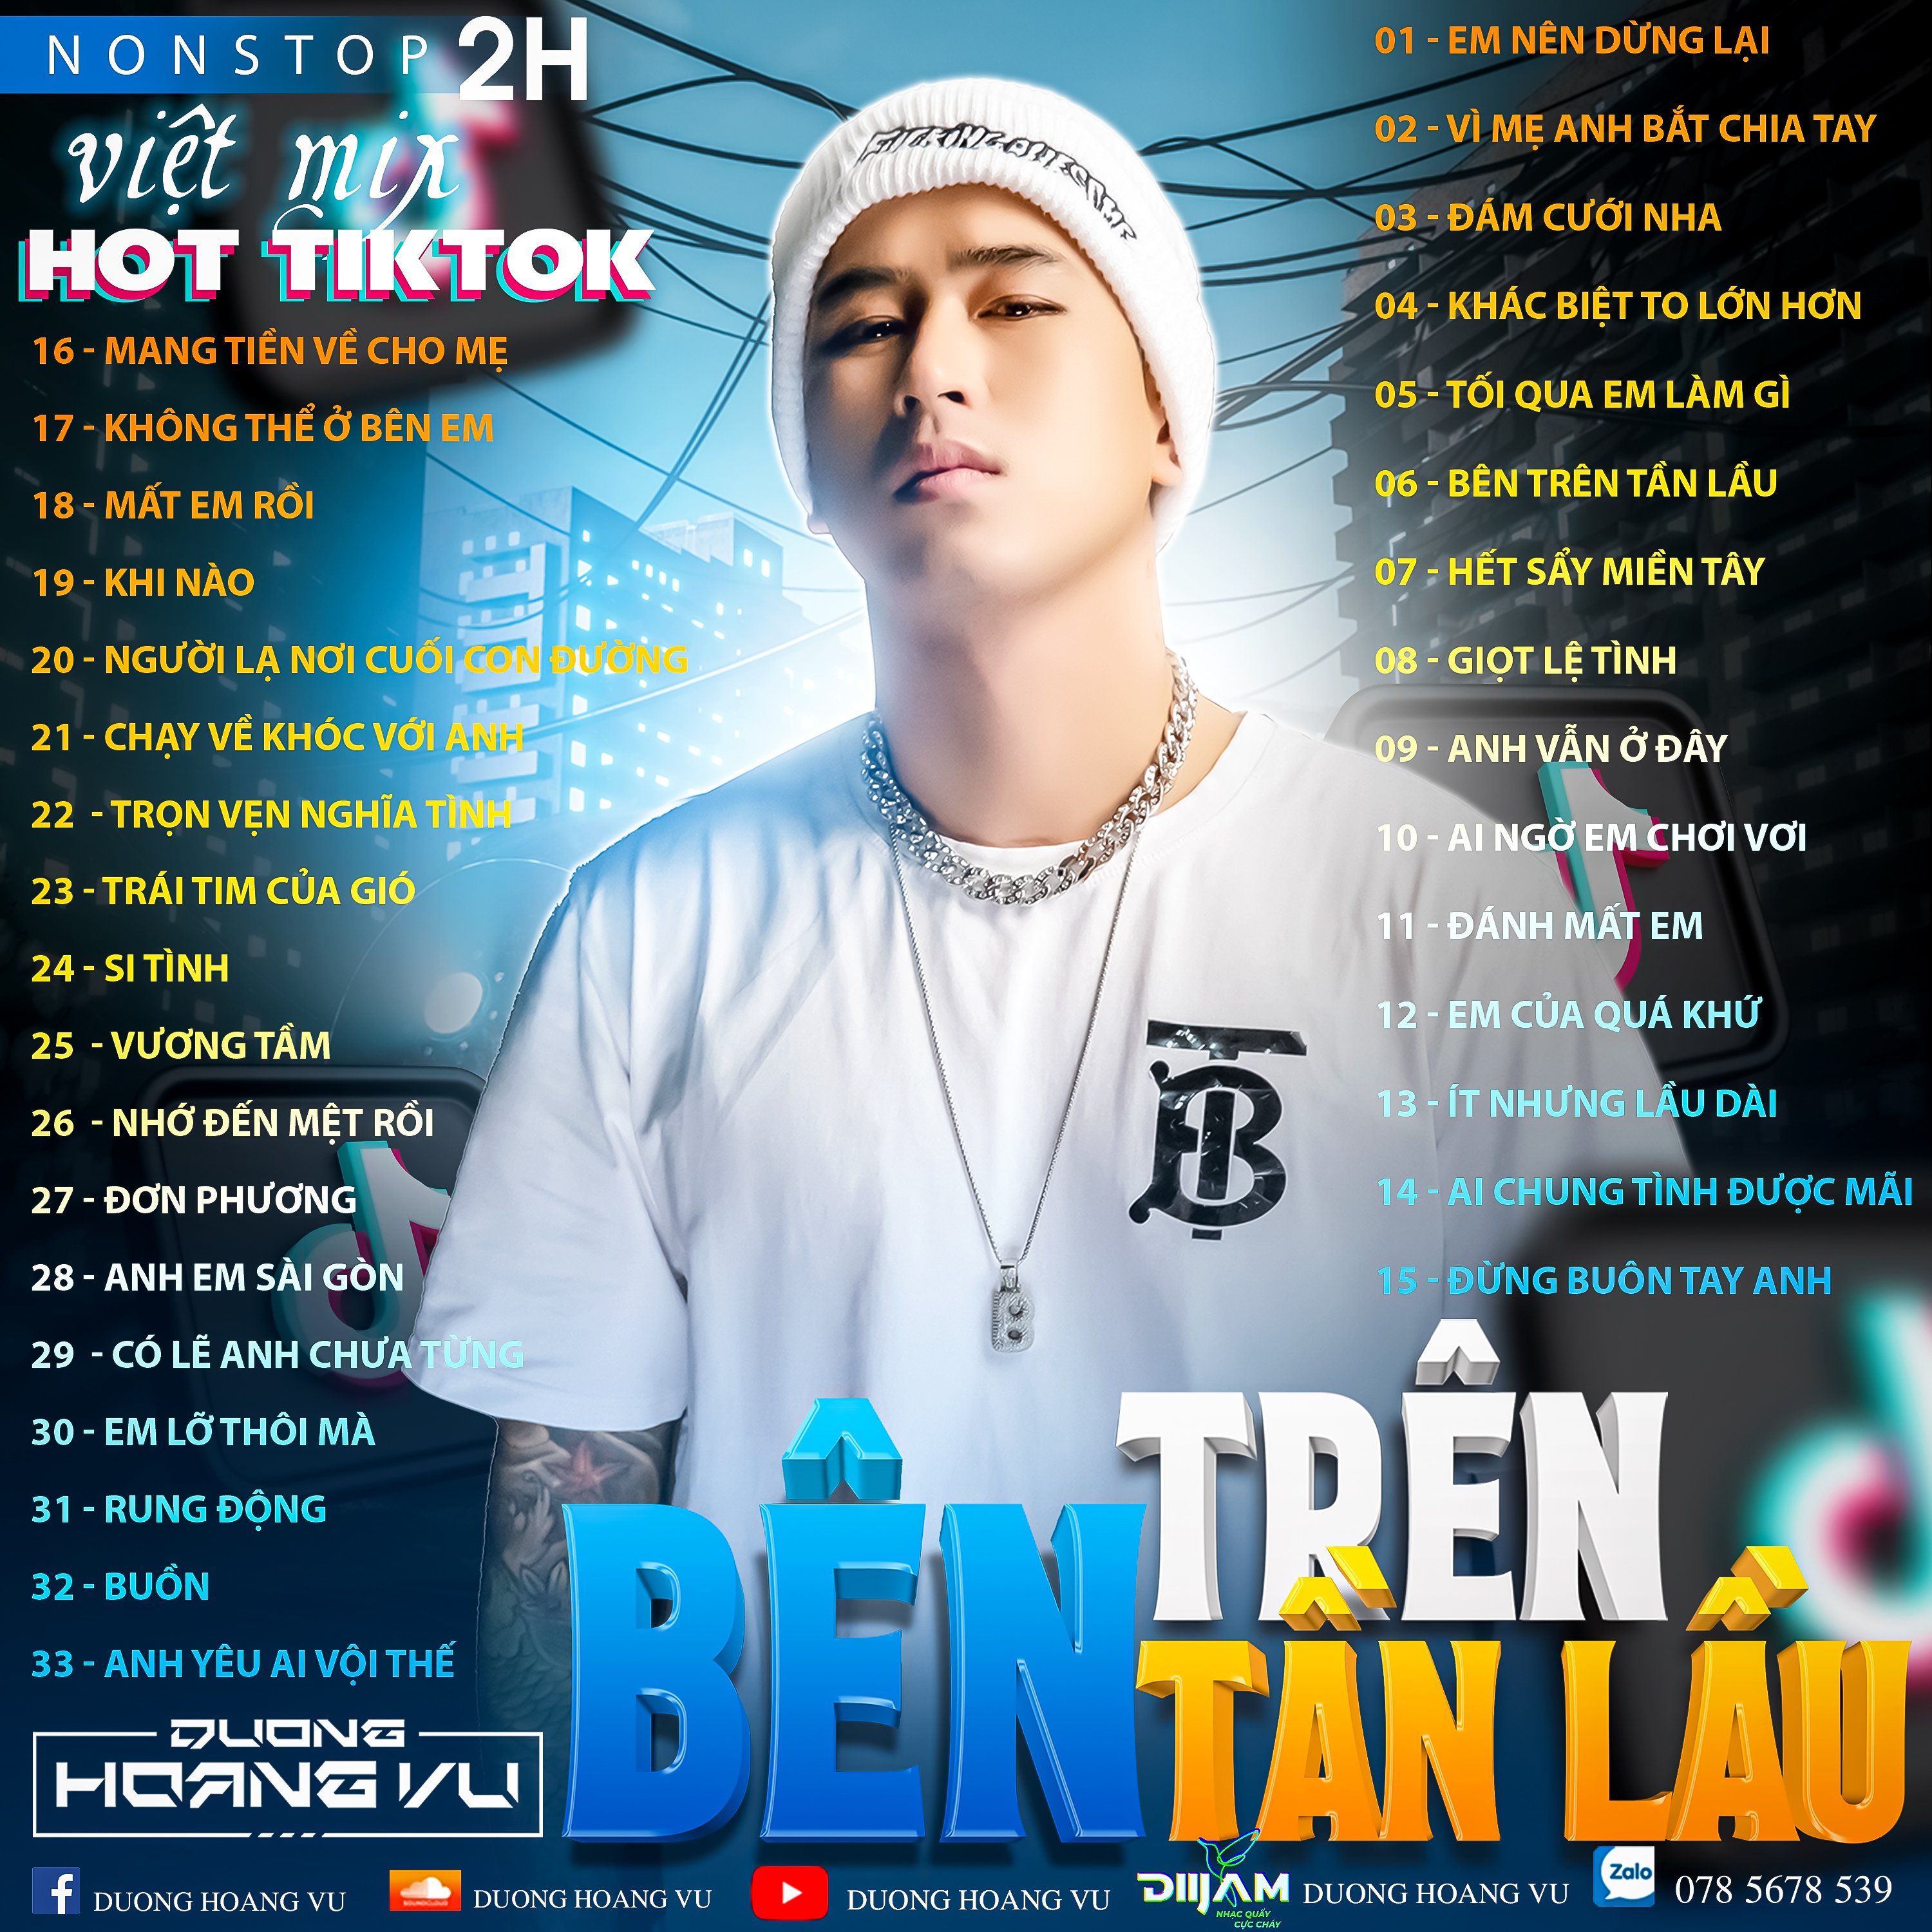 ဒေါင်းလုပ် (Demo ) Nst Việt Mix Hot tiktok 2h - 2022 - DJ Dương Hoàng Vũ Mix Mua Full IB Zalo 078.5678.539